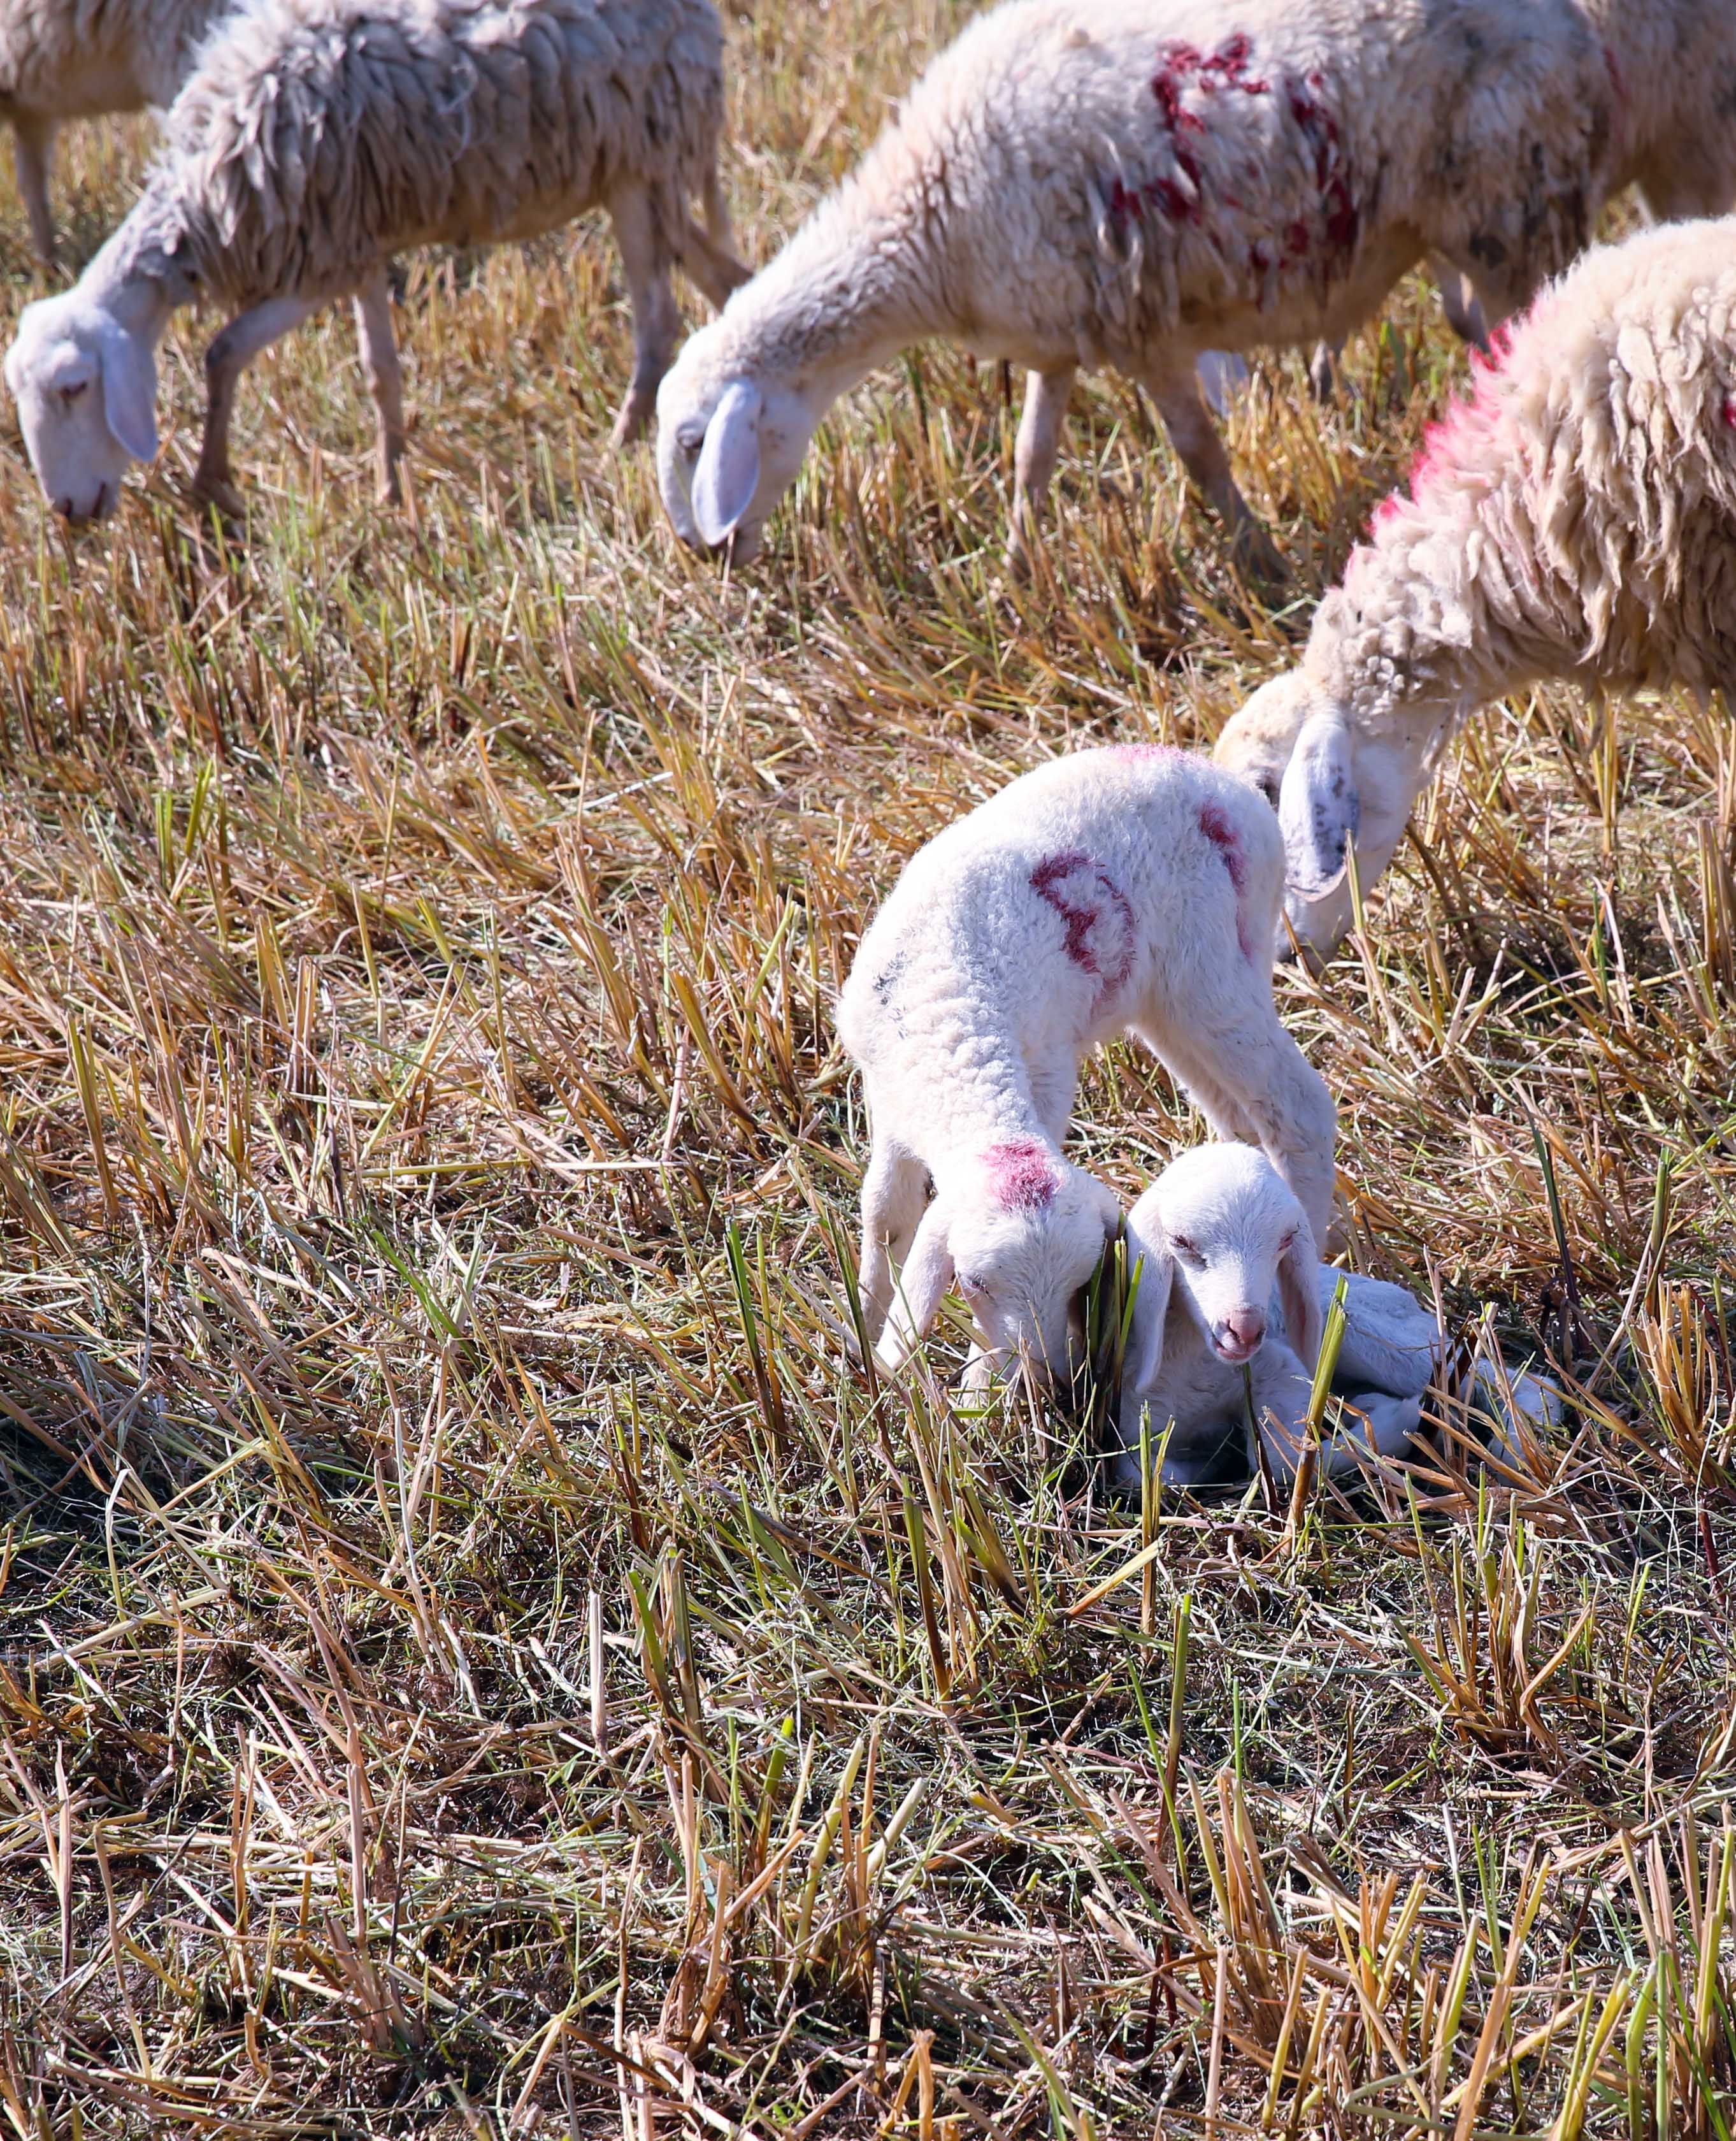 Giữa thảo nguyên bao la, có những chú cừu non như những cụm bông lăng xăng đùa nghịch.